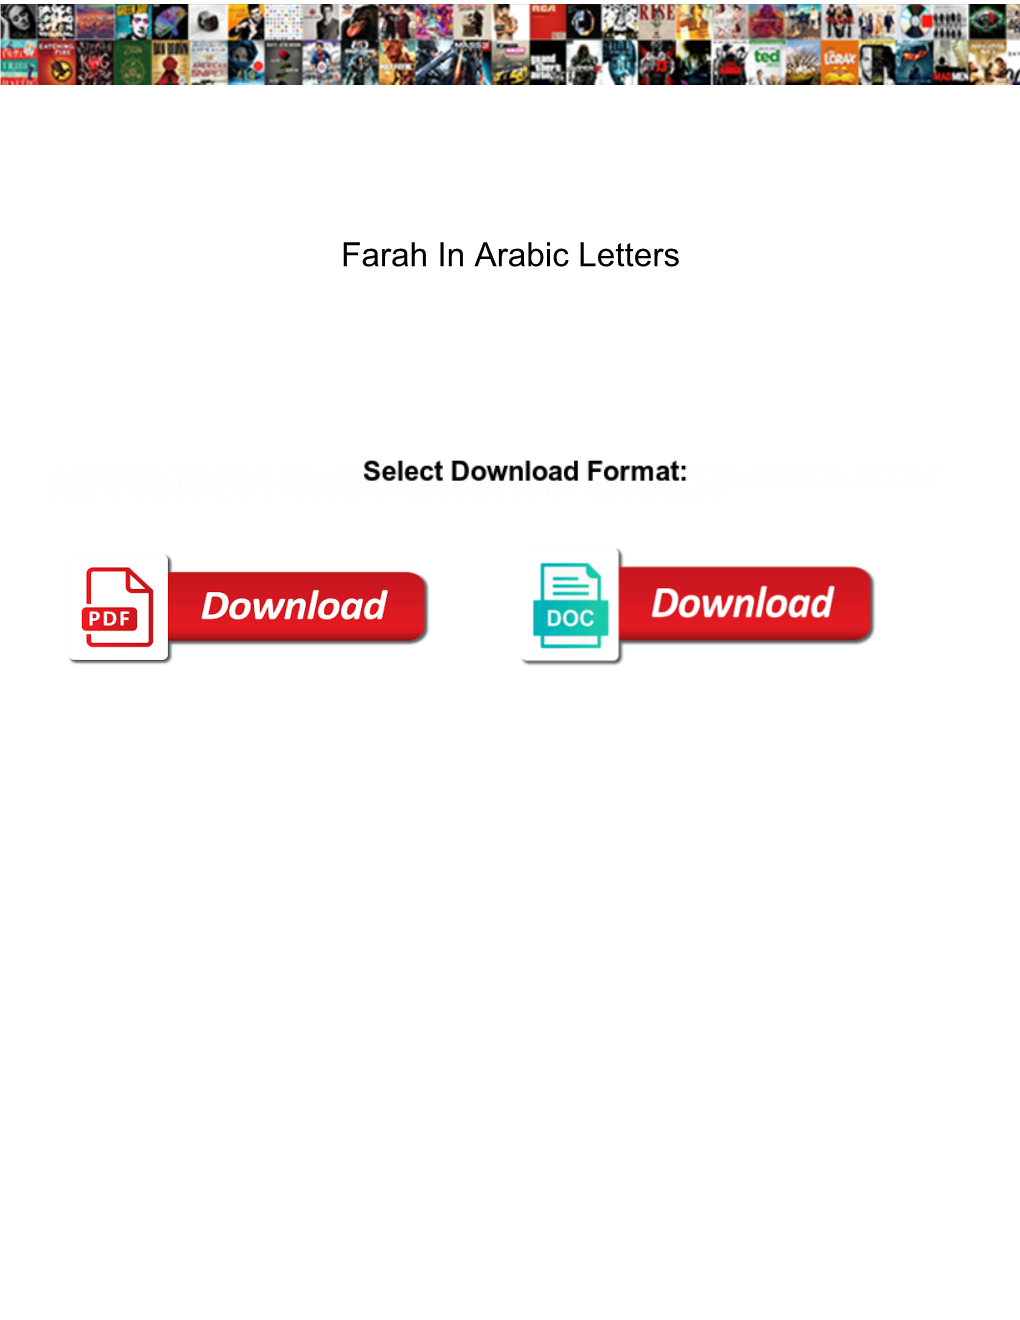 Farah in Arabic Letters